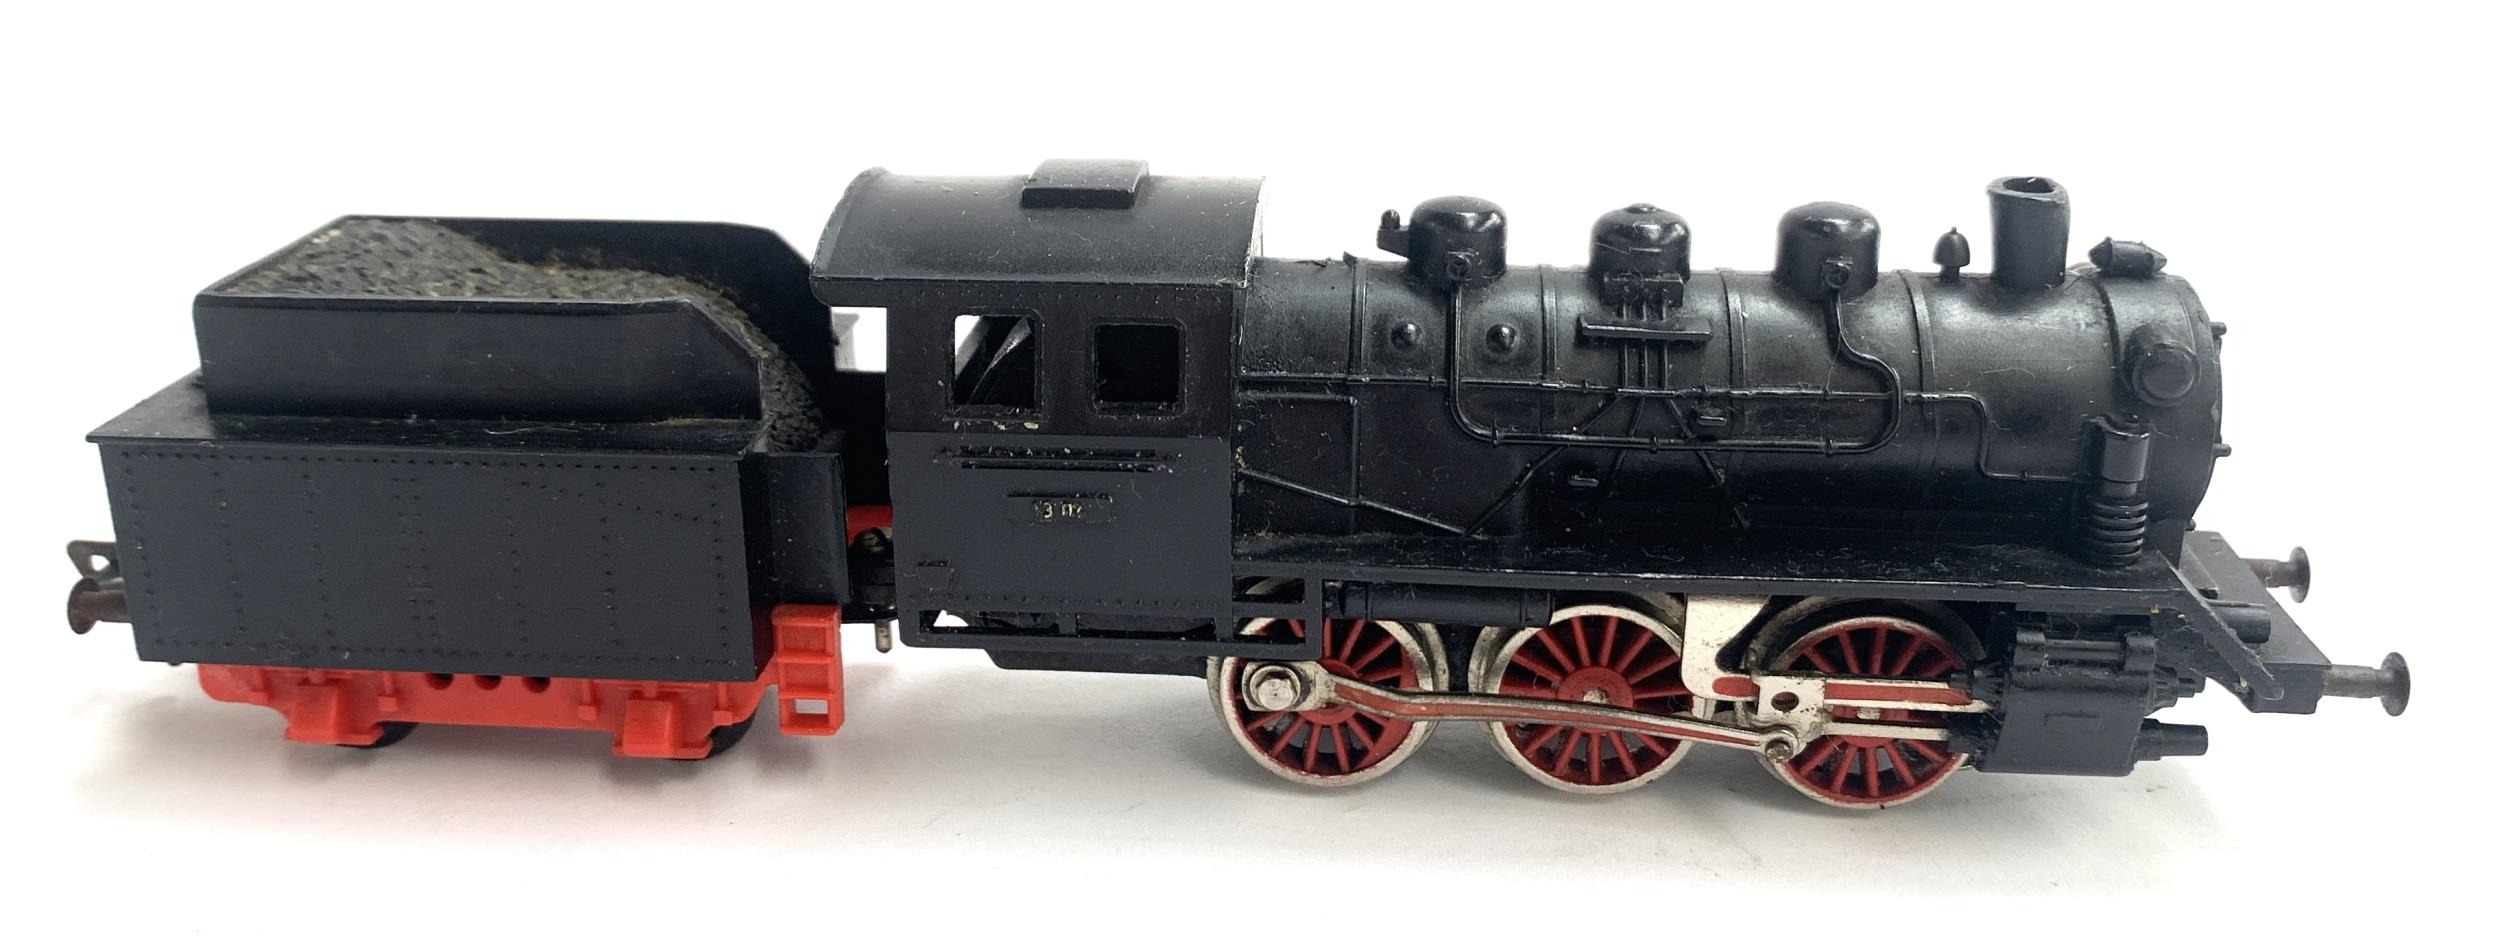 A Fleischmann 1304 HO gauge steam locomotive with tender